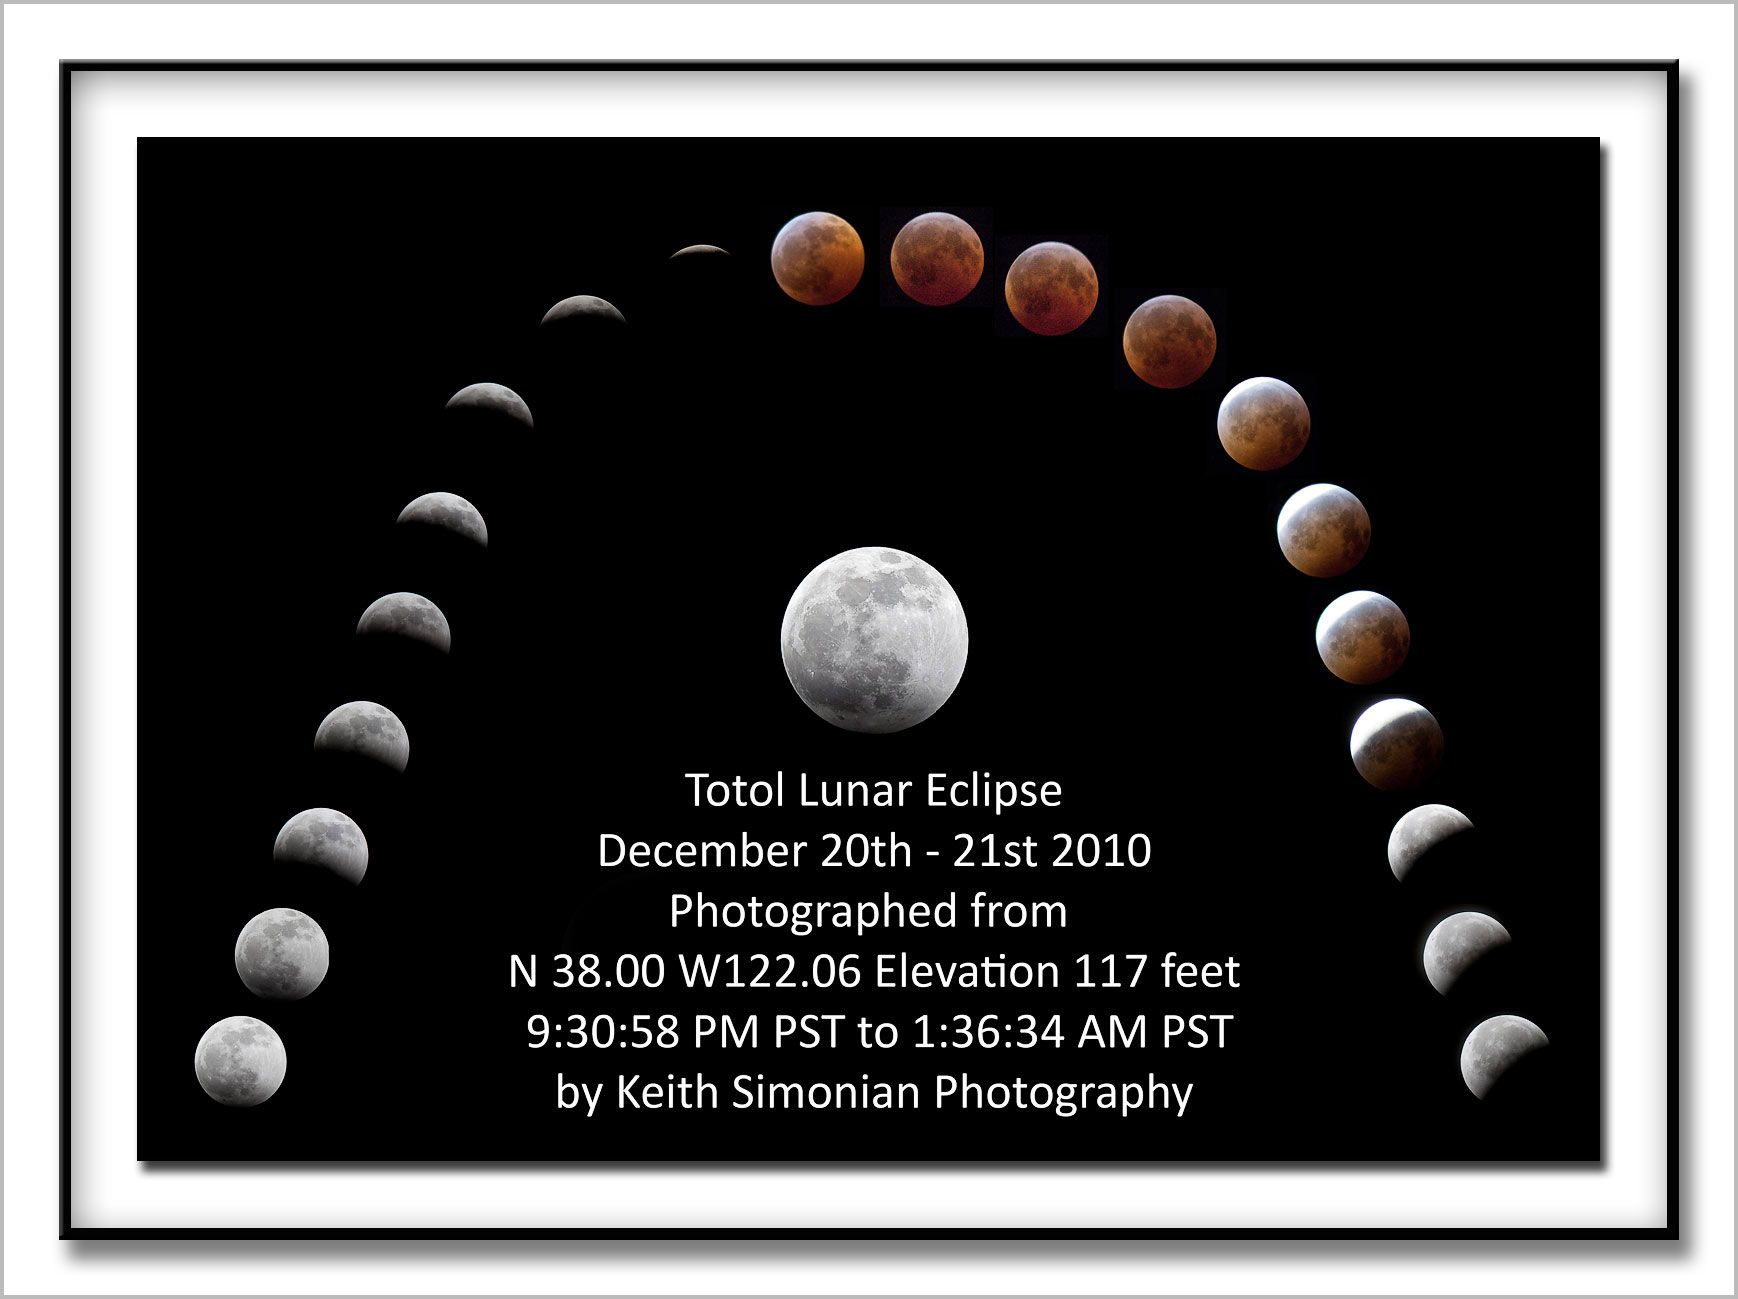 20 photo composite of total lunar eclipse on December 20 - December 21, 2010